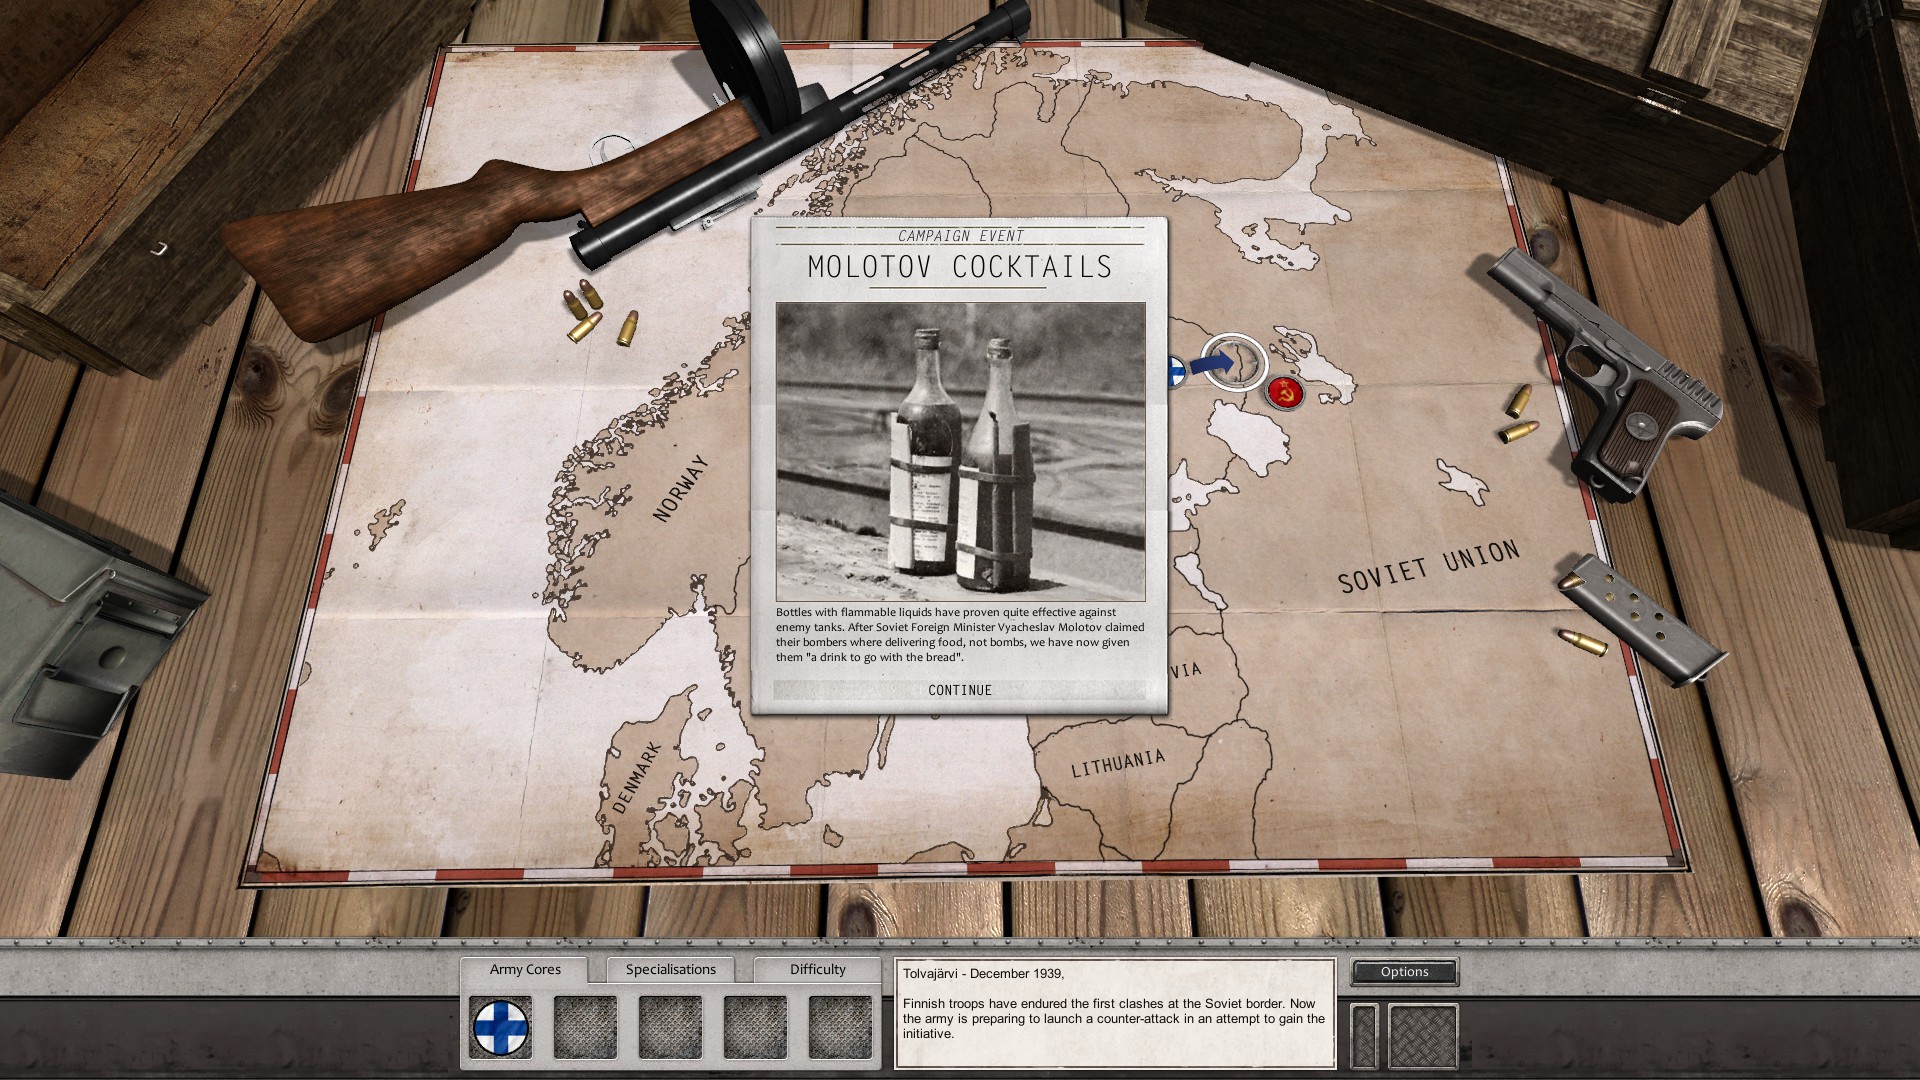 Order Of Battle: World War II - U.S. Pacific & Winter War DLC Steam CD Key